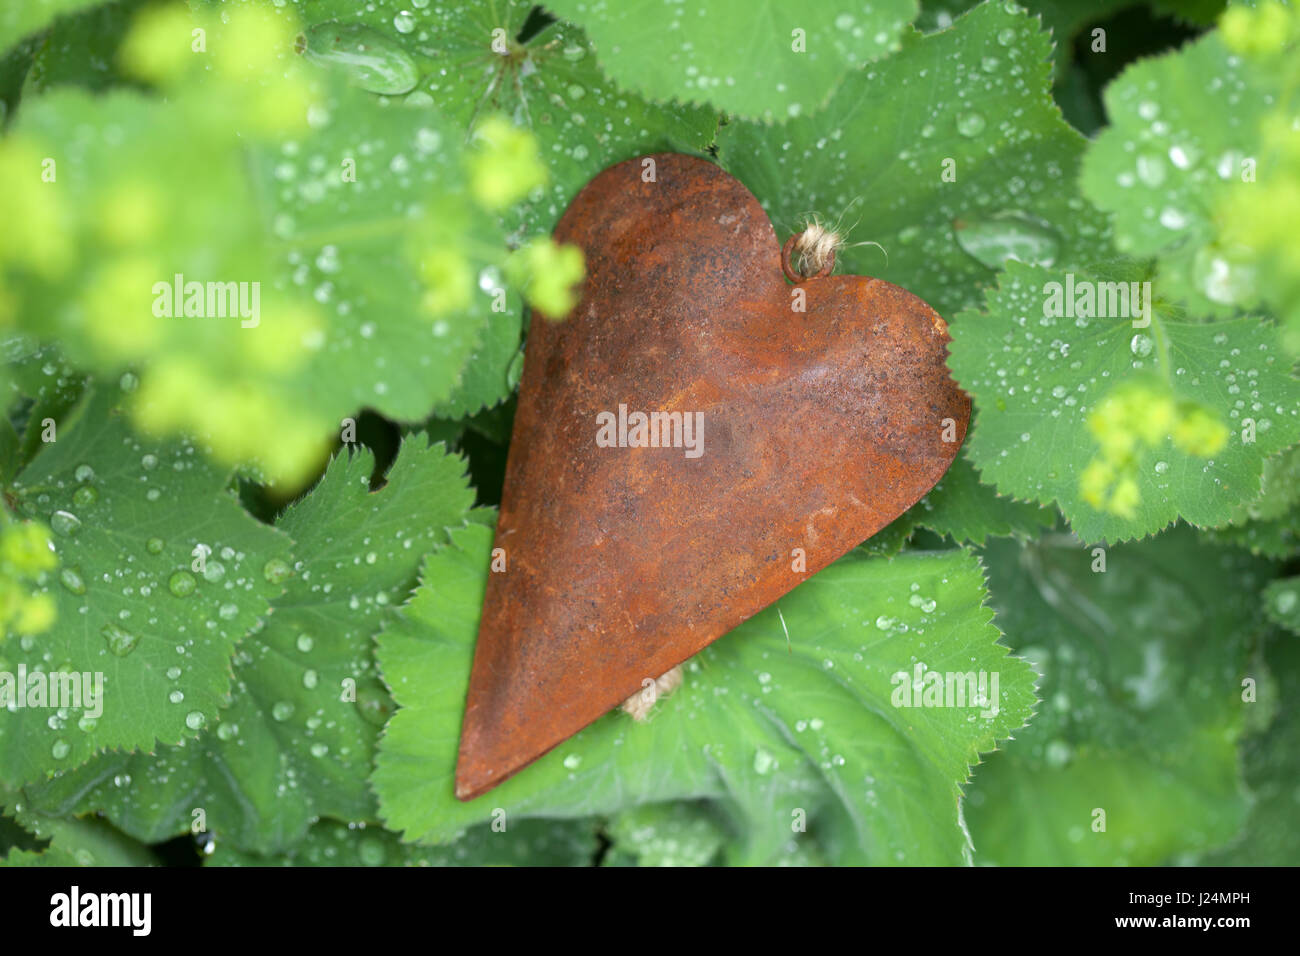 Rusty metal heart between wet leaves in the garden Stock Photo